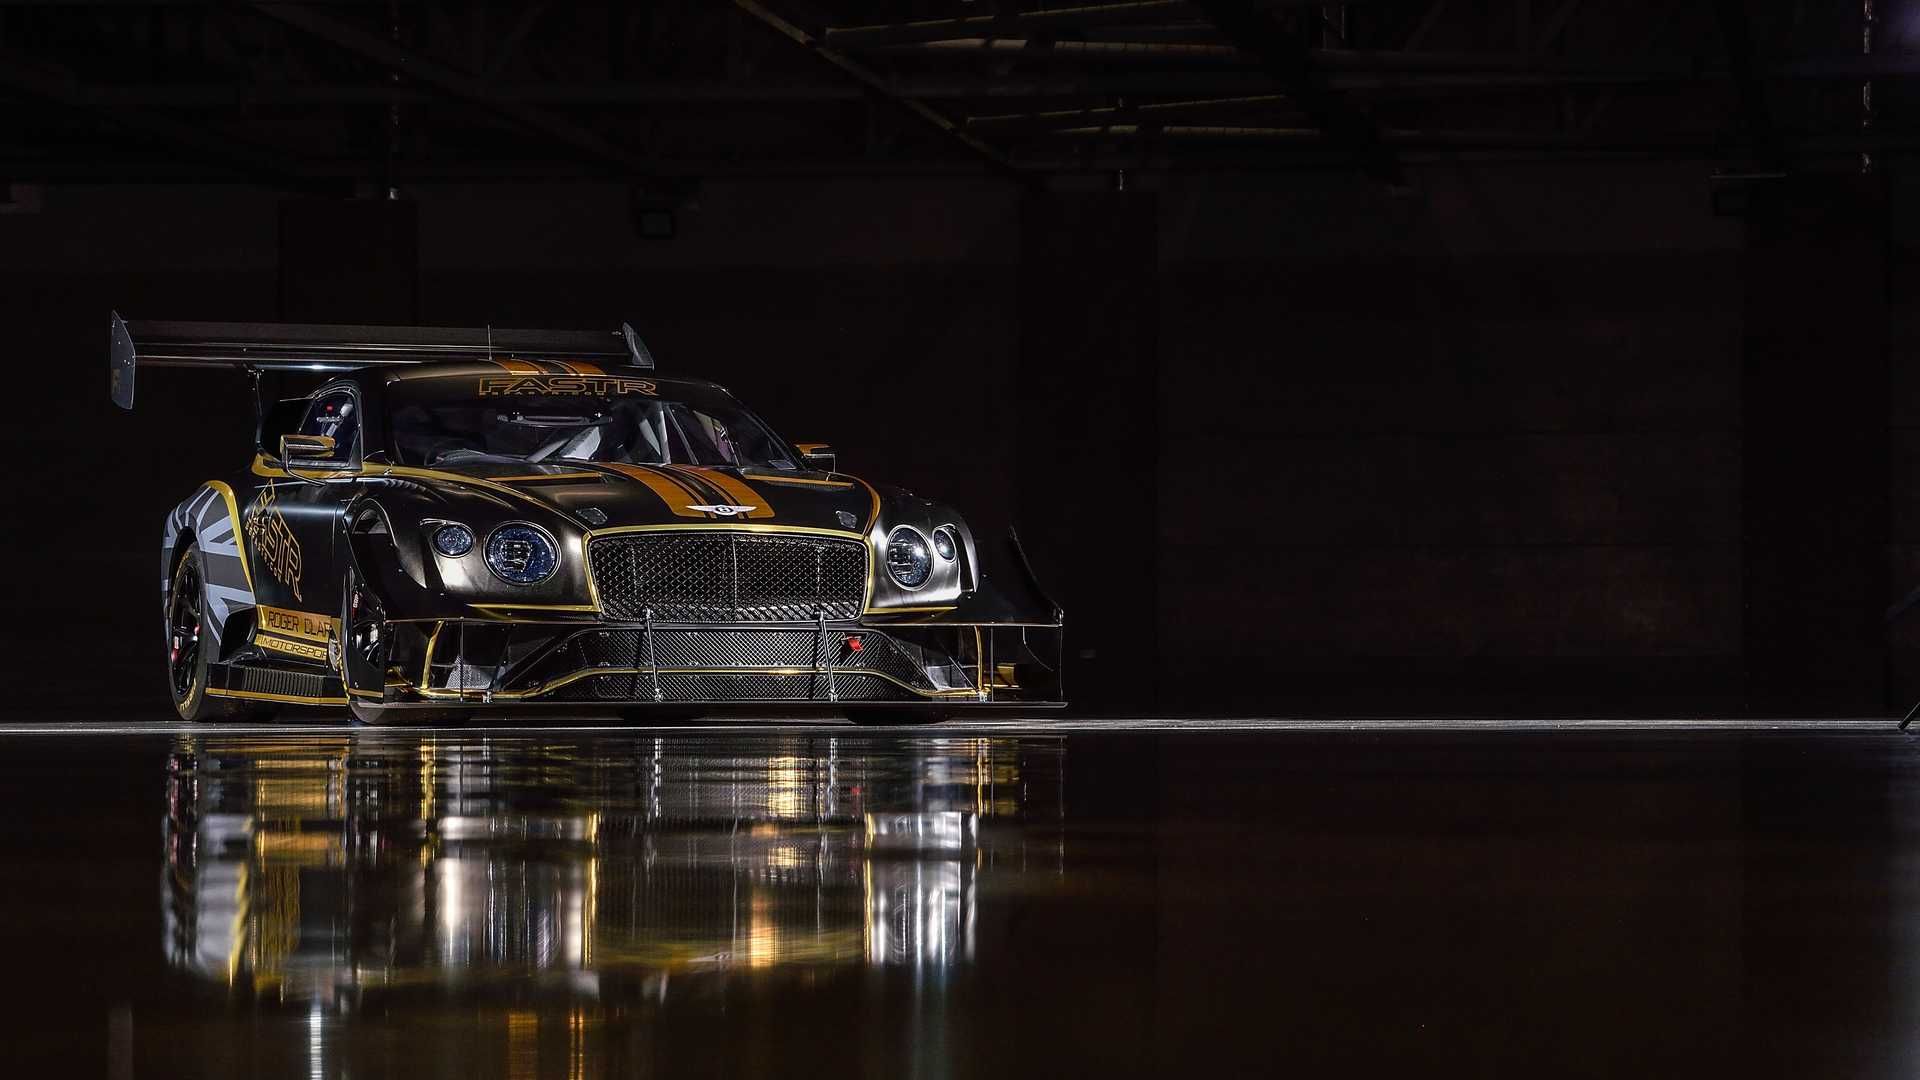 مرجع متخصصين ايران نماي جلو بنتلي كنتيننتال جي تي 3 پايكز پيك / Bentley Continental GT3 Pikes Peak سياه رنگ با نوارهاي زرد